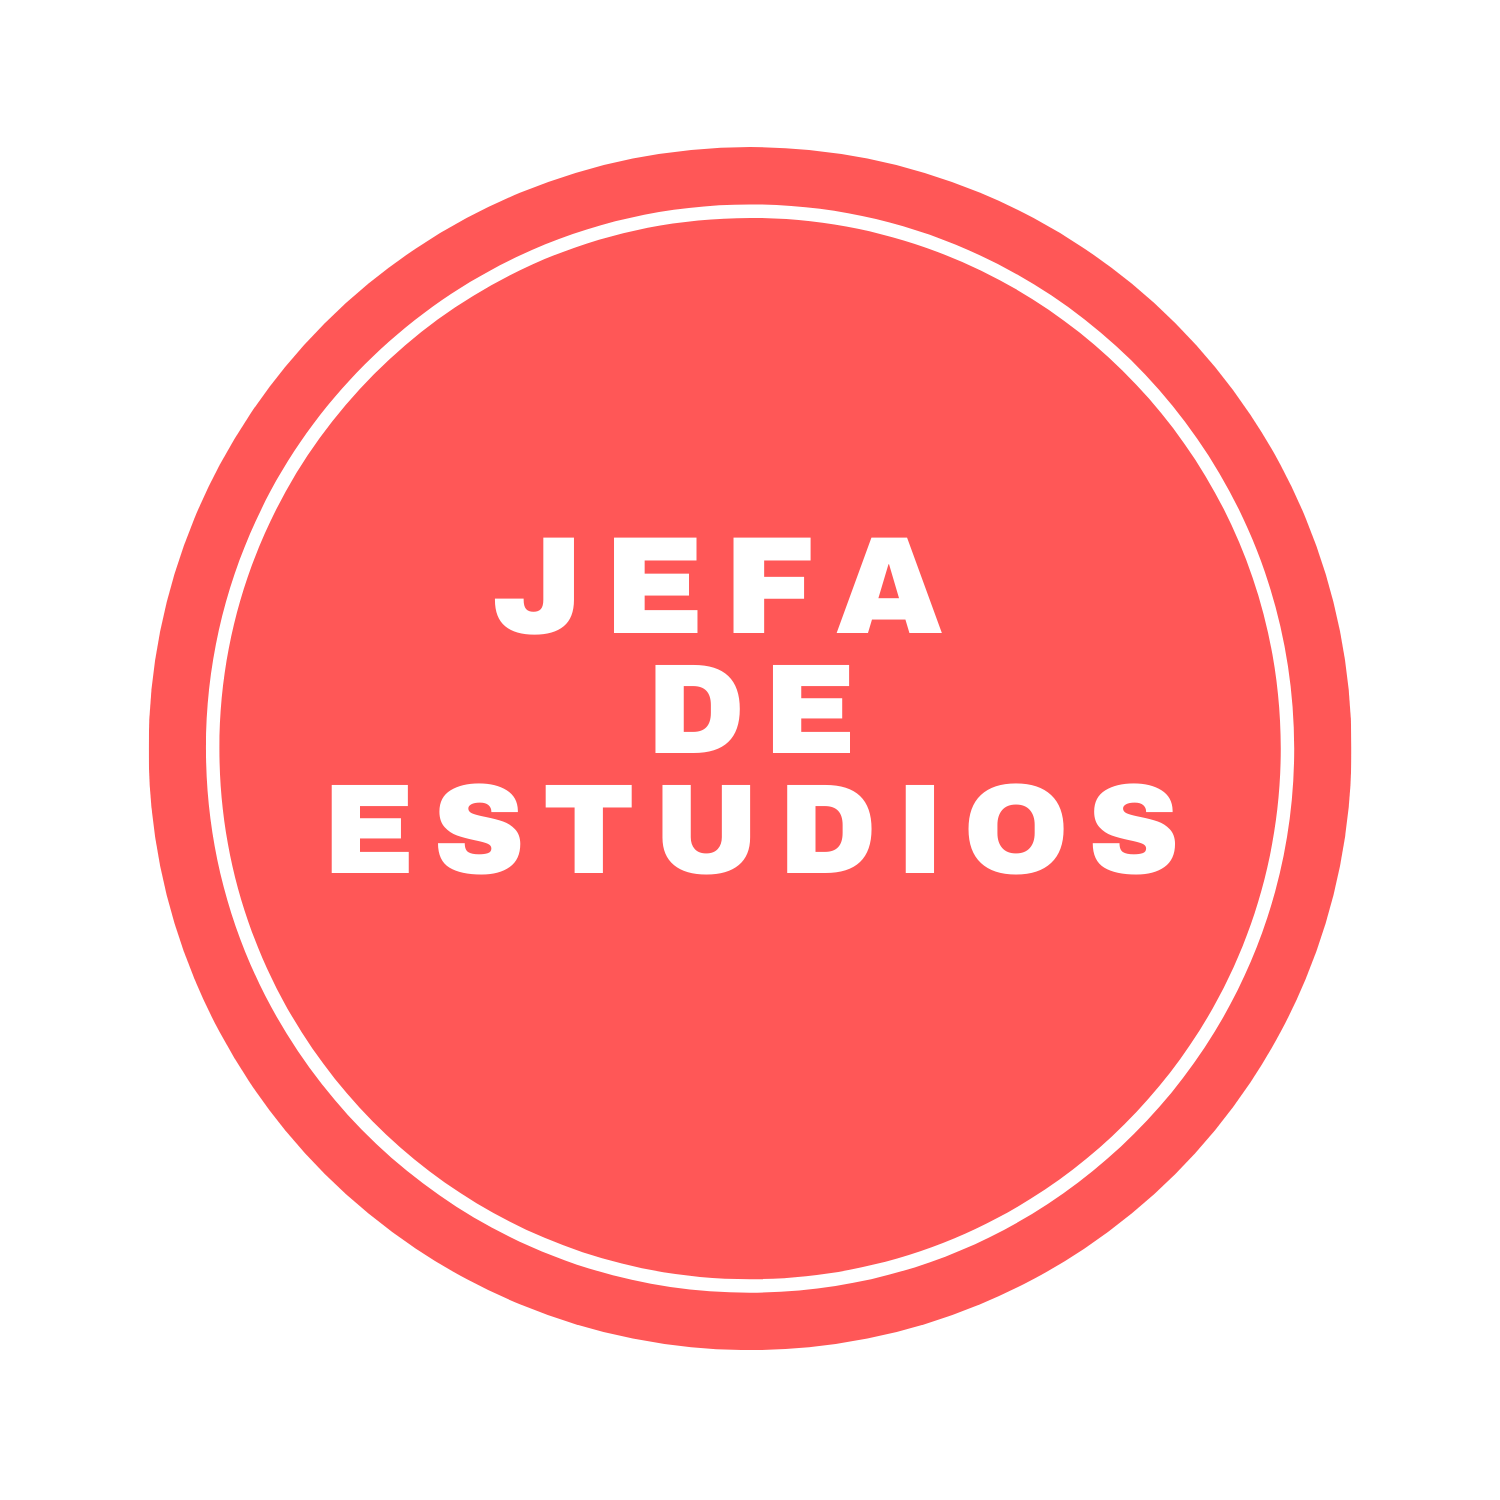 JEFA DE ESTUDIOS